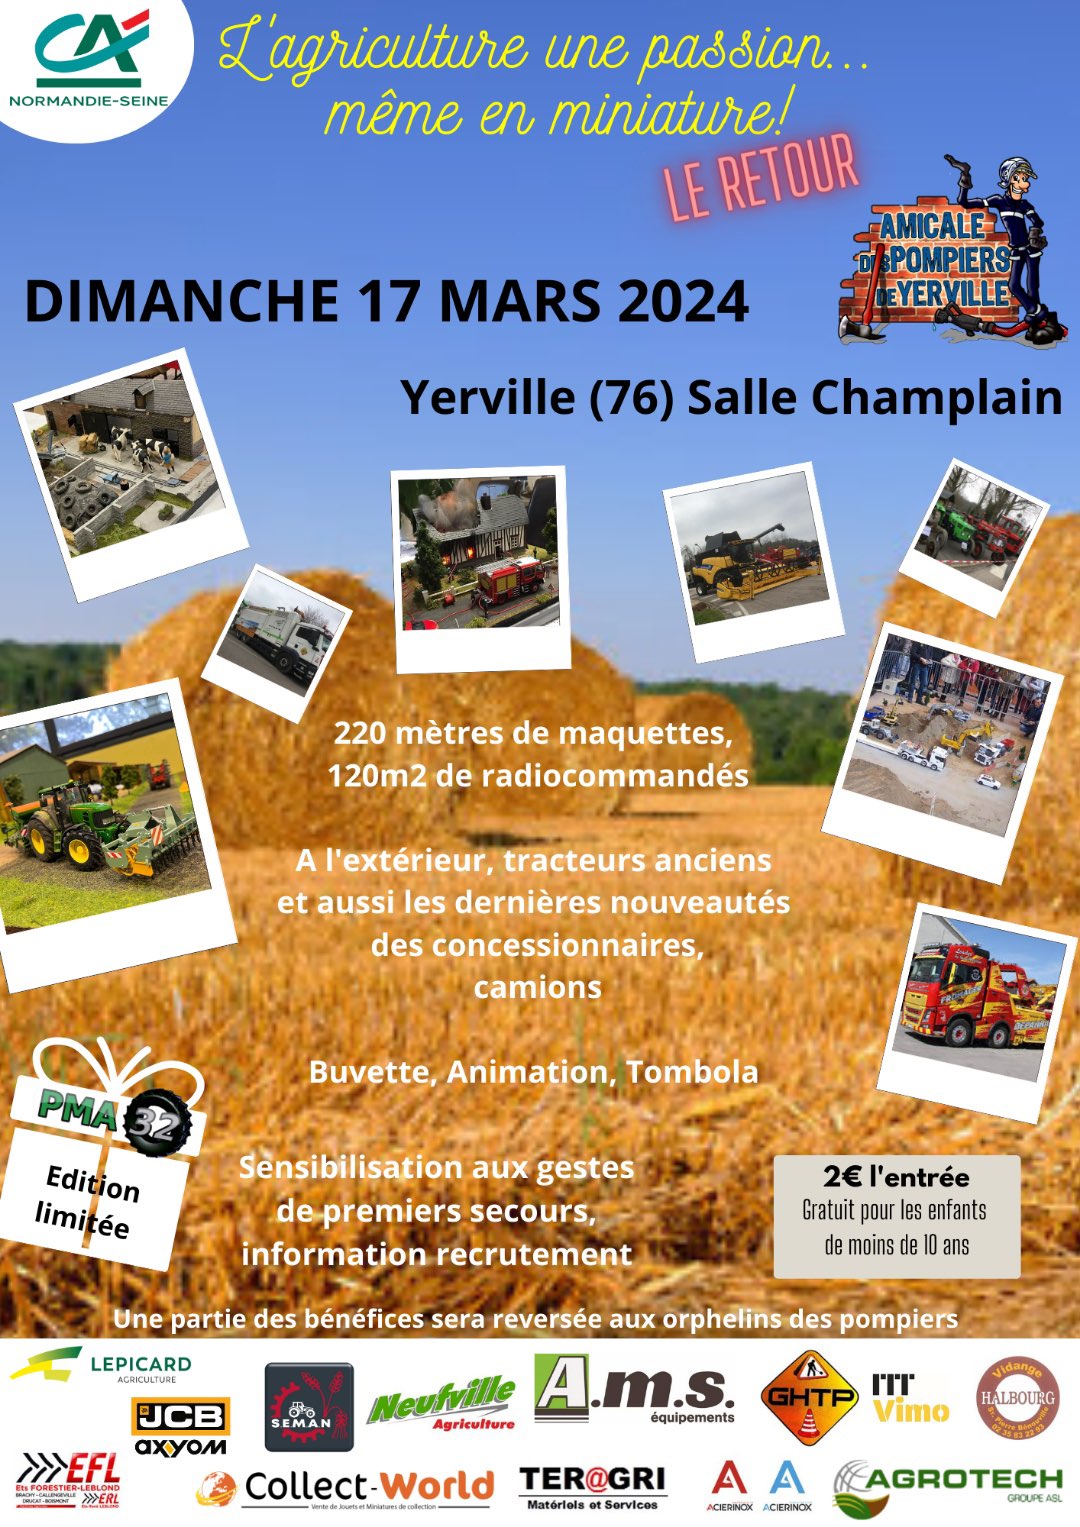 Exposition de miniatures agricoles à Yerville (76) le 17 Mars 2024